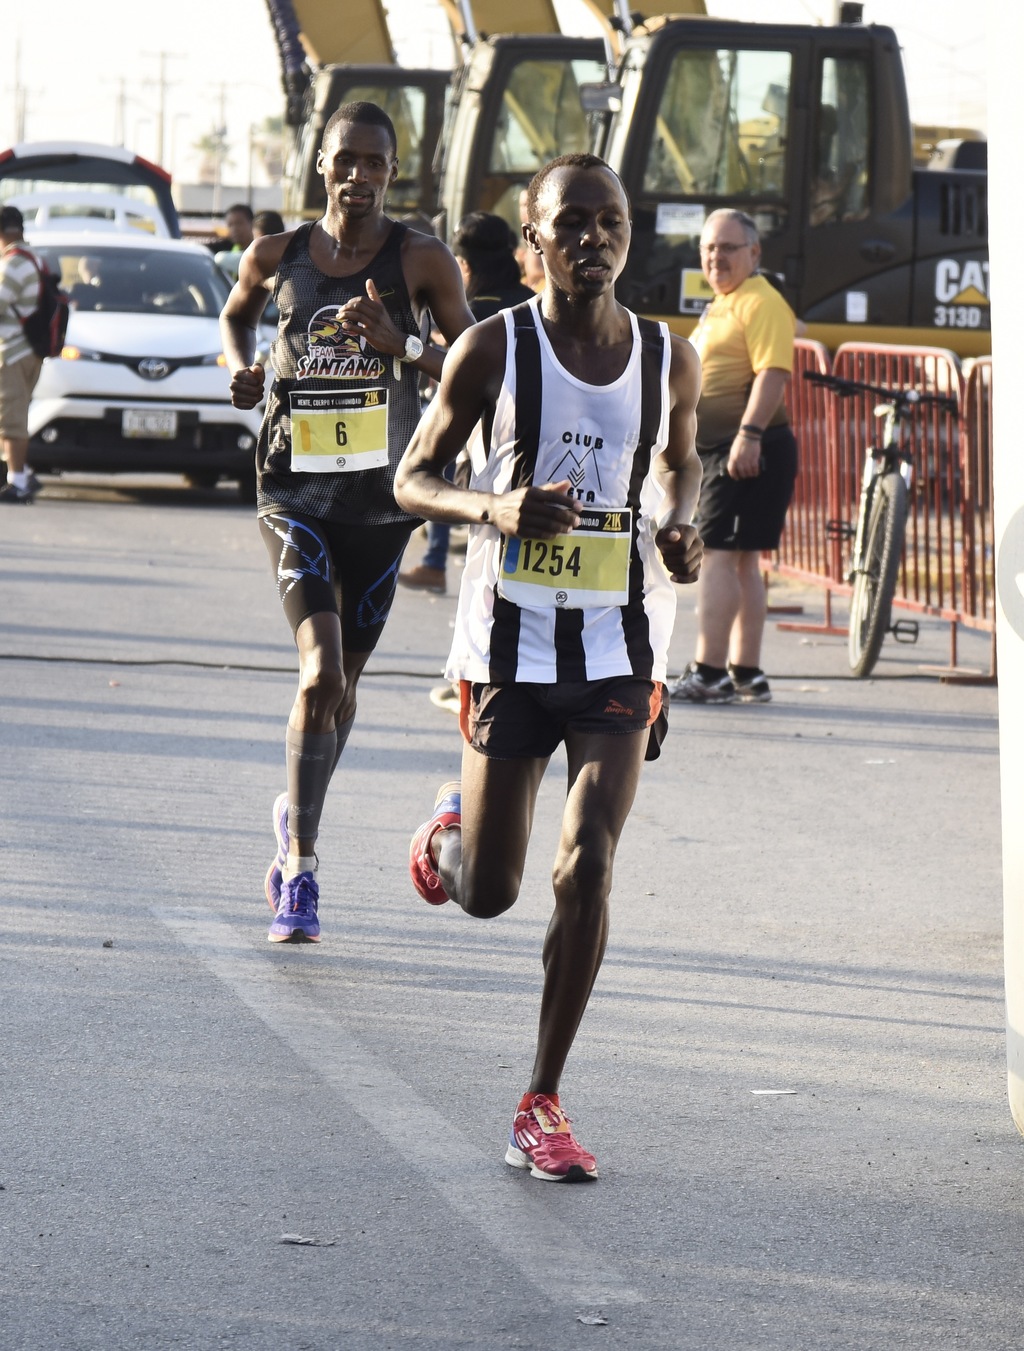 Los kenianos dominaron el Medio Maratón Caterpillar. (JESÚS GALINDO)